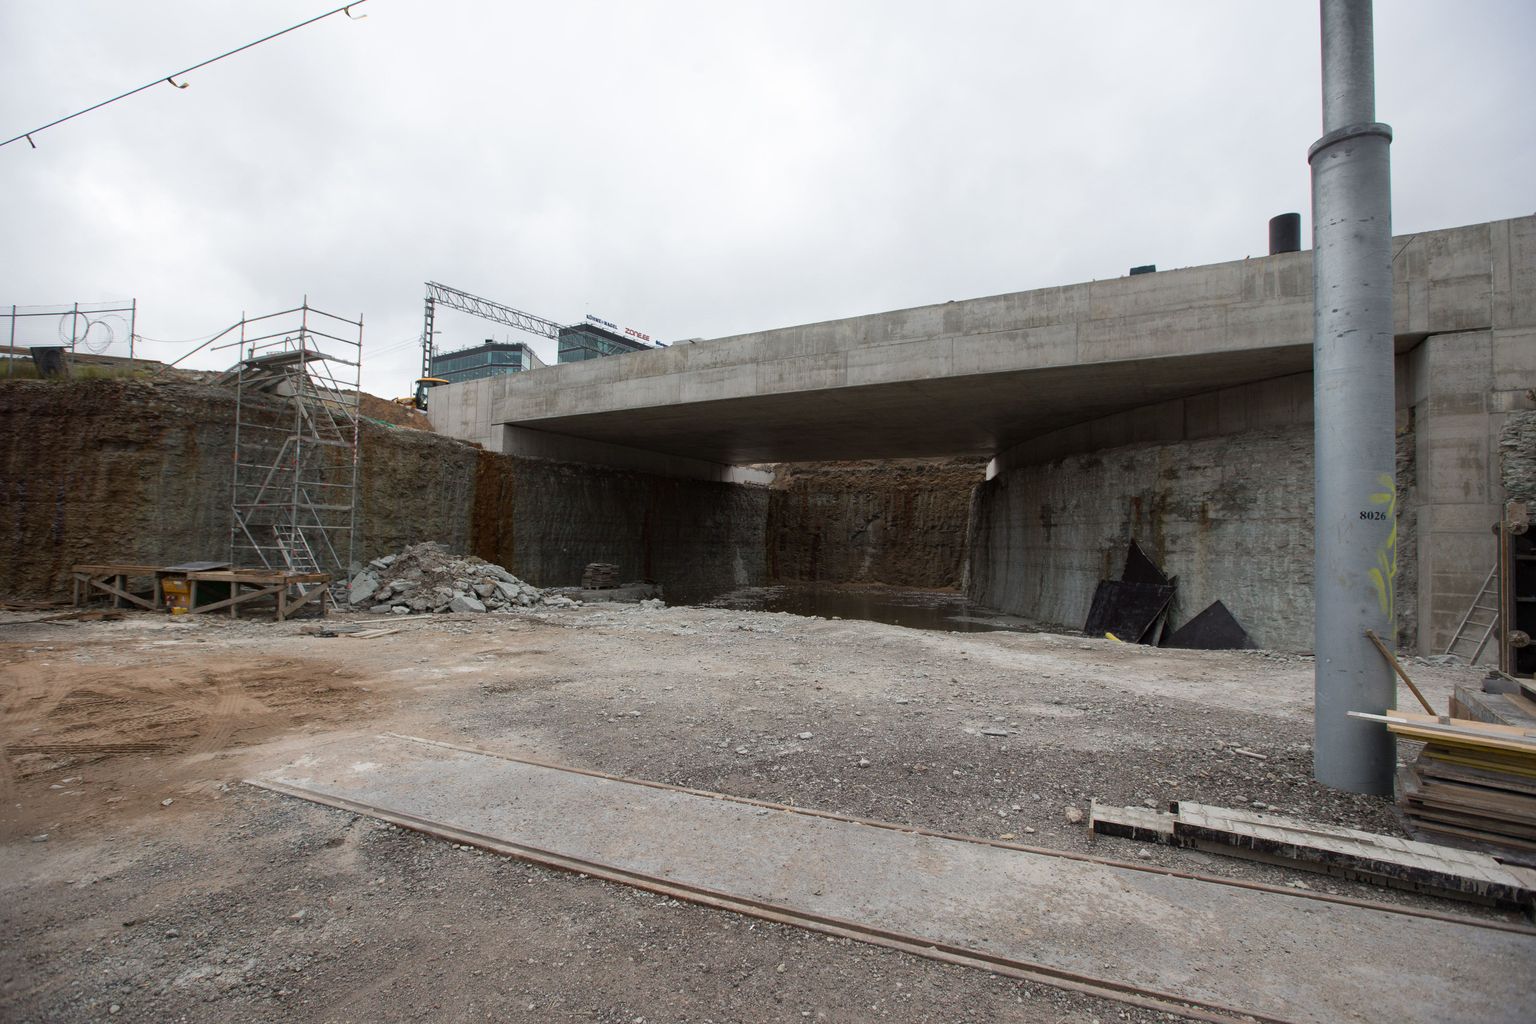 Lennujaama trammiliini ehitusel kaevatakse praegu raudtee alust tunnelit